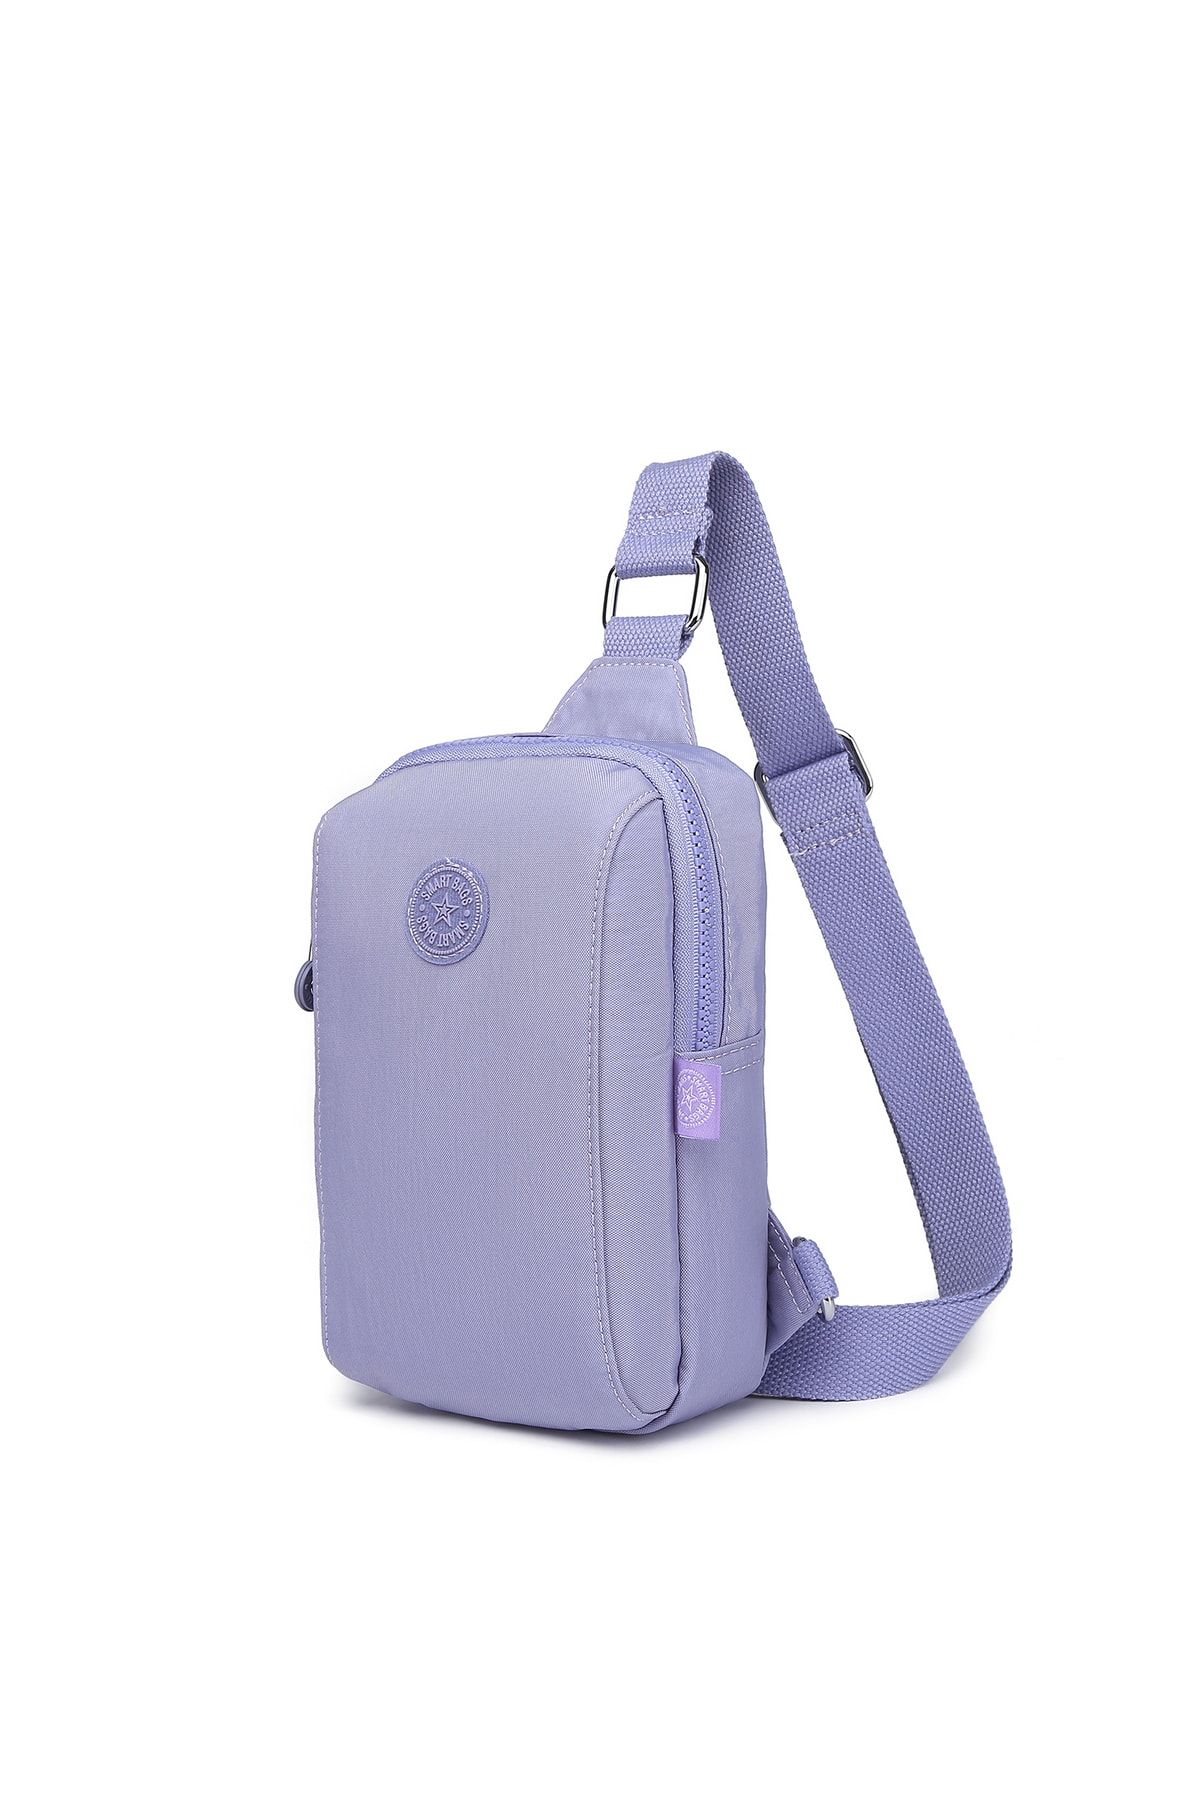 Smart Bags Bodybag Unisex Postacı Çantası Krinkıl Kumaş 3105 Lila